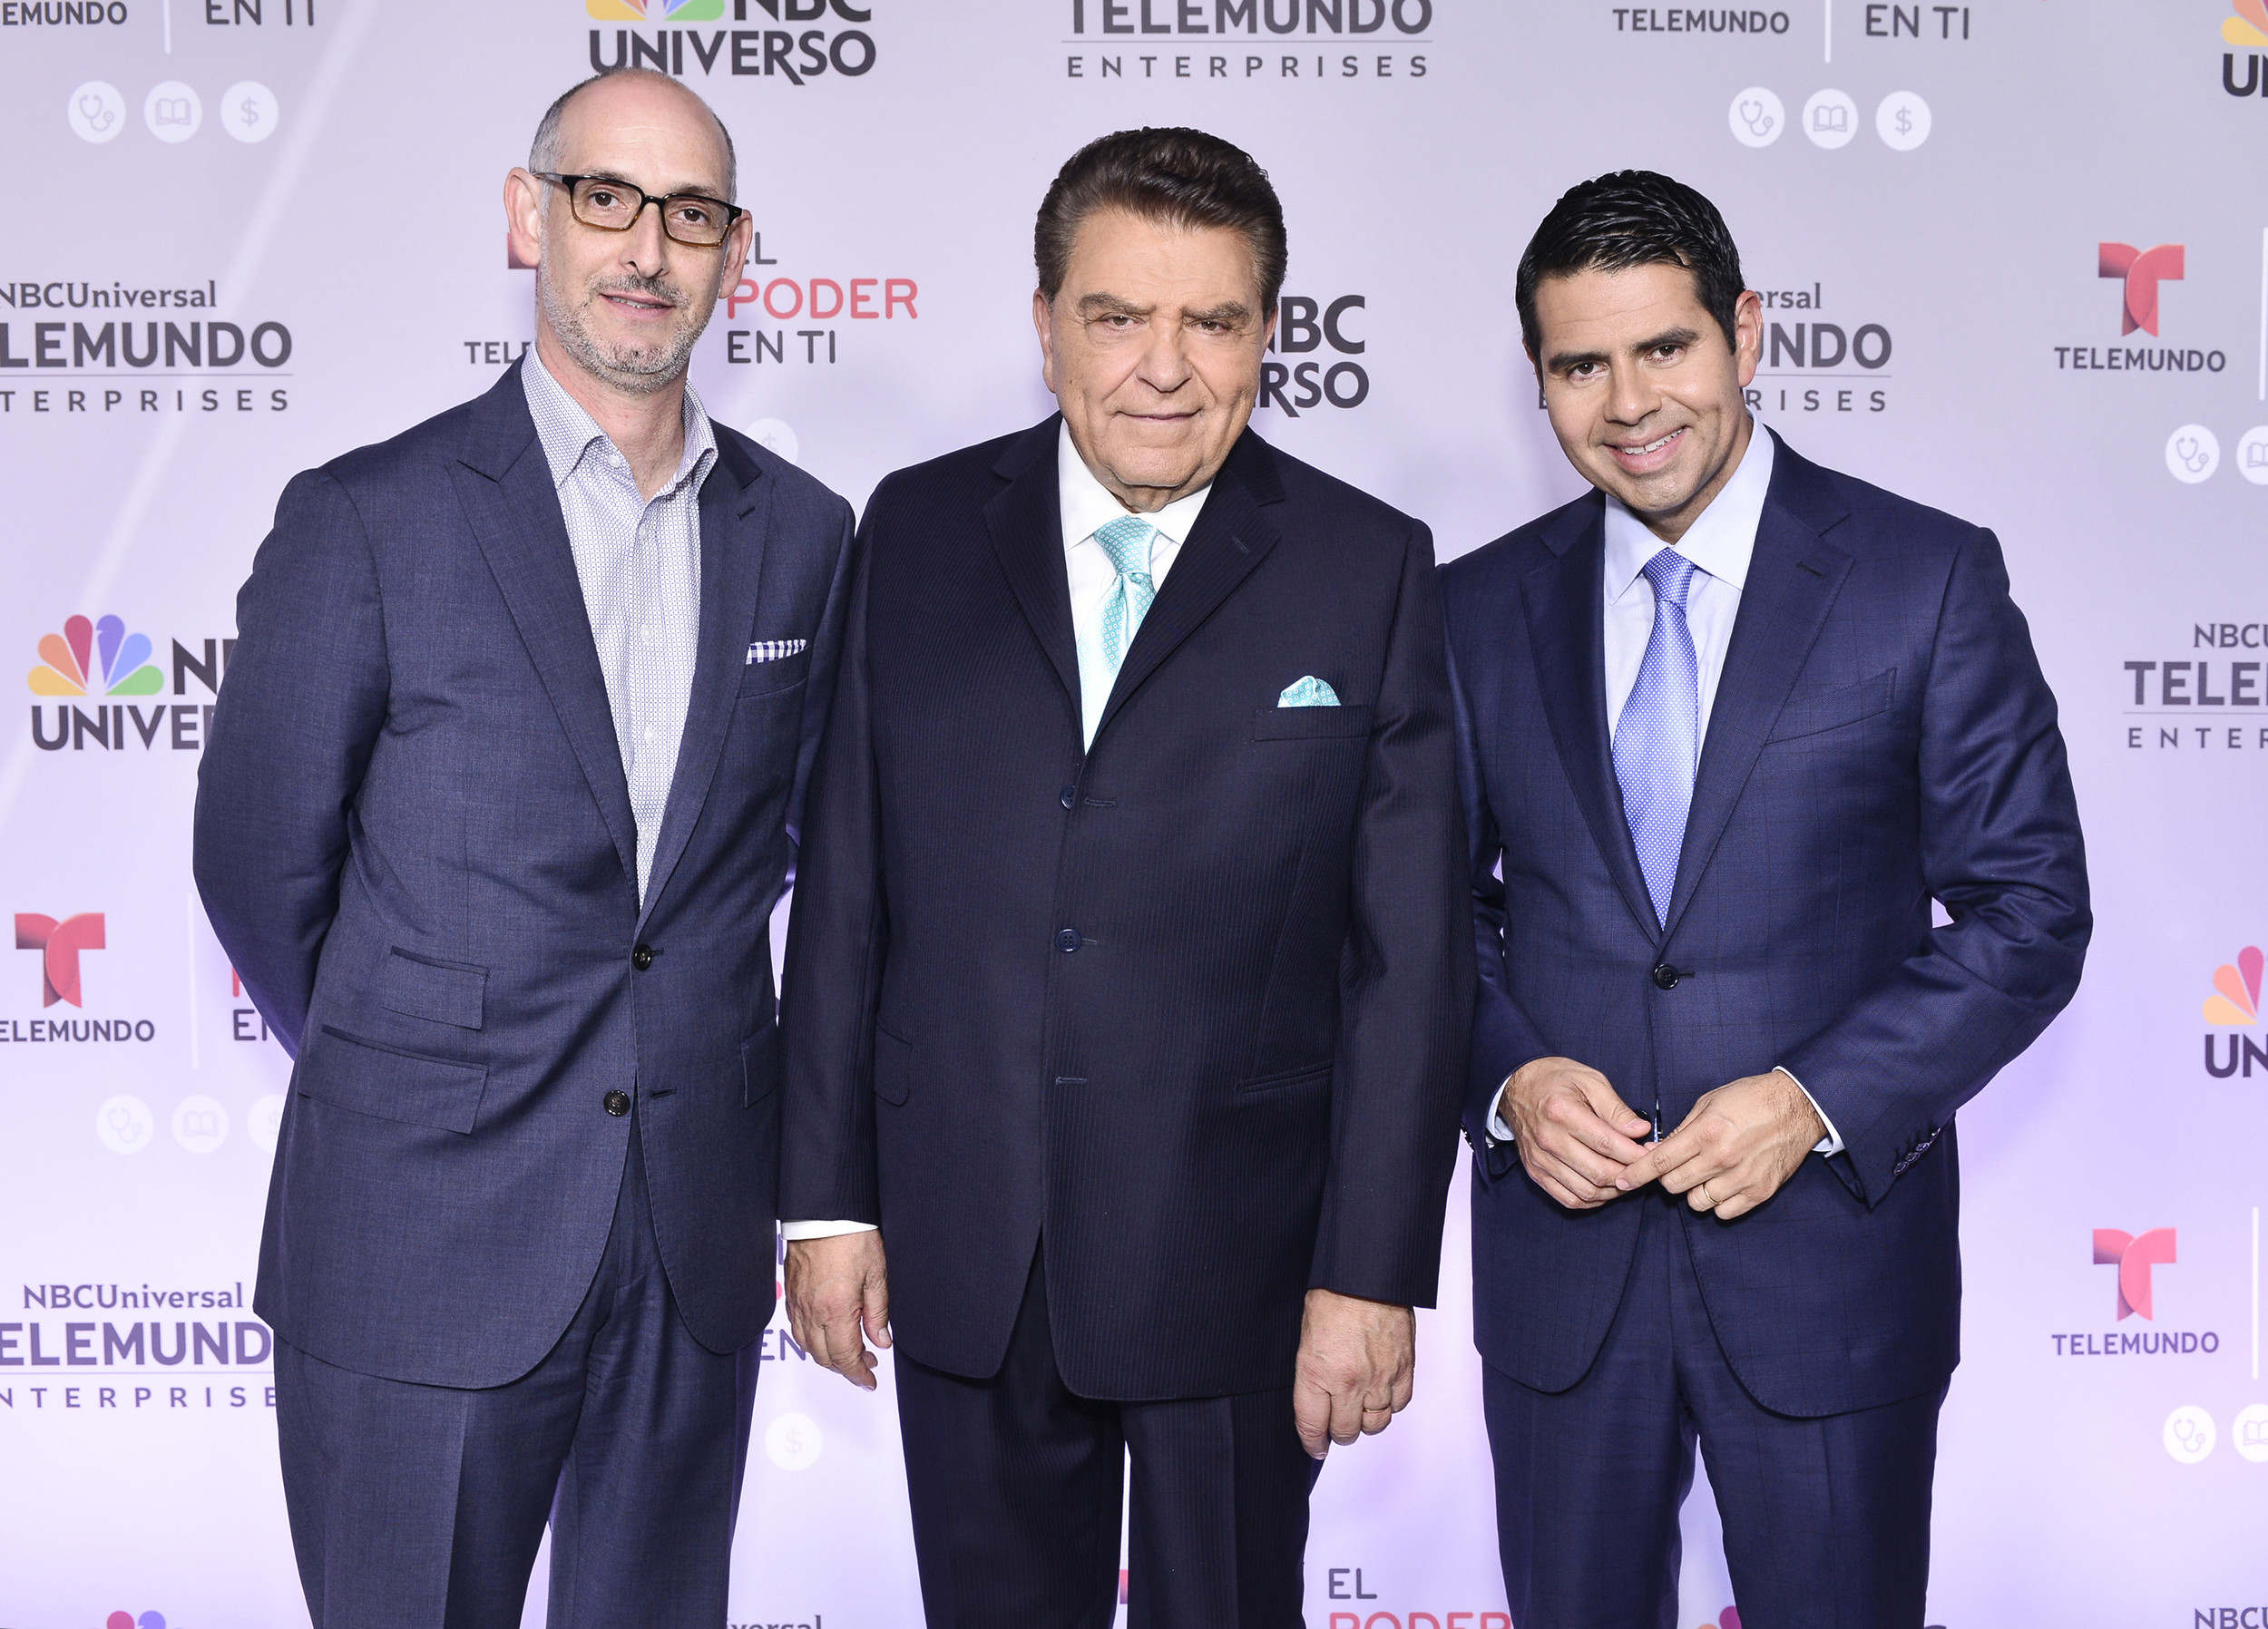 Luis Silberwasser, President of Telemundo Network_Don Francisco_Cesar Conde.jpg